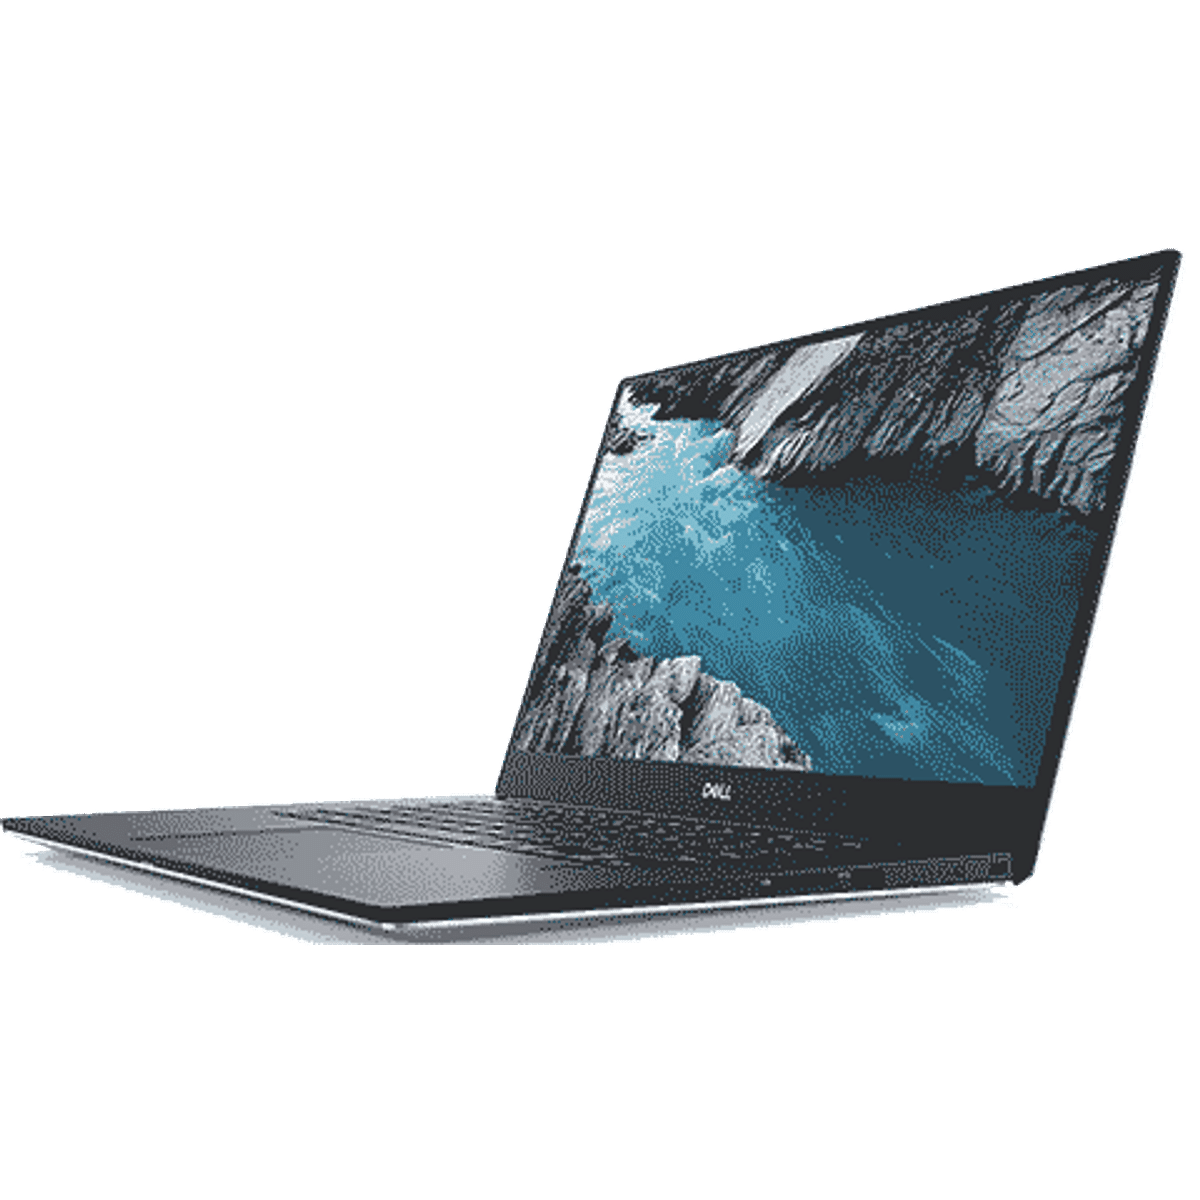 Core i7 Laptops